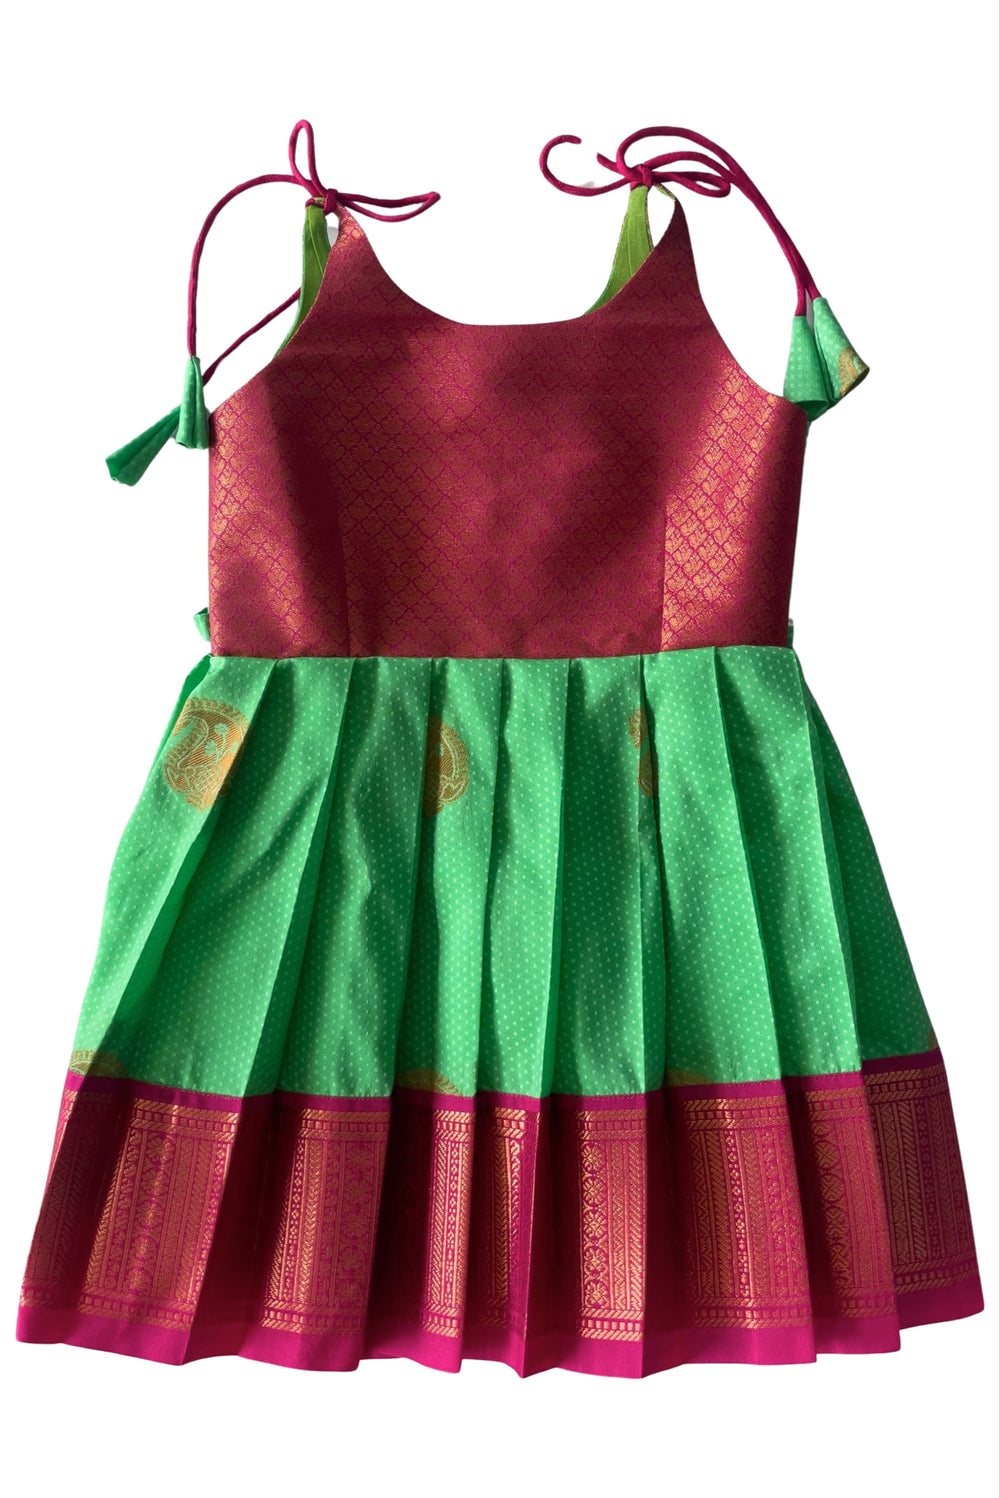 The Nesavu Tie-up Frock Green and Pink Silk Blend Tie-Up Frock for Girls Nesavu 14 (6M) / Green / Style 2 T307B-14 Girls Green Silk Frock | Pink and Gold Traditional Motifs | The Nesavu